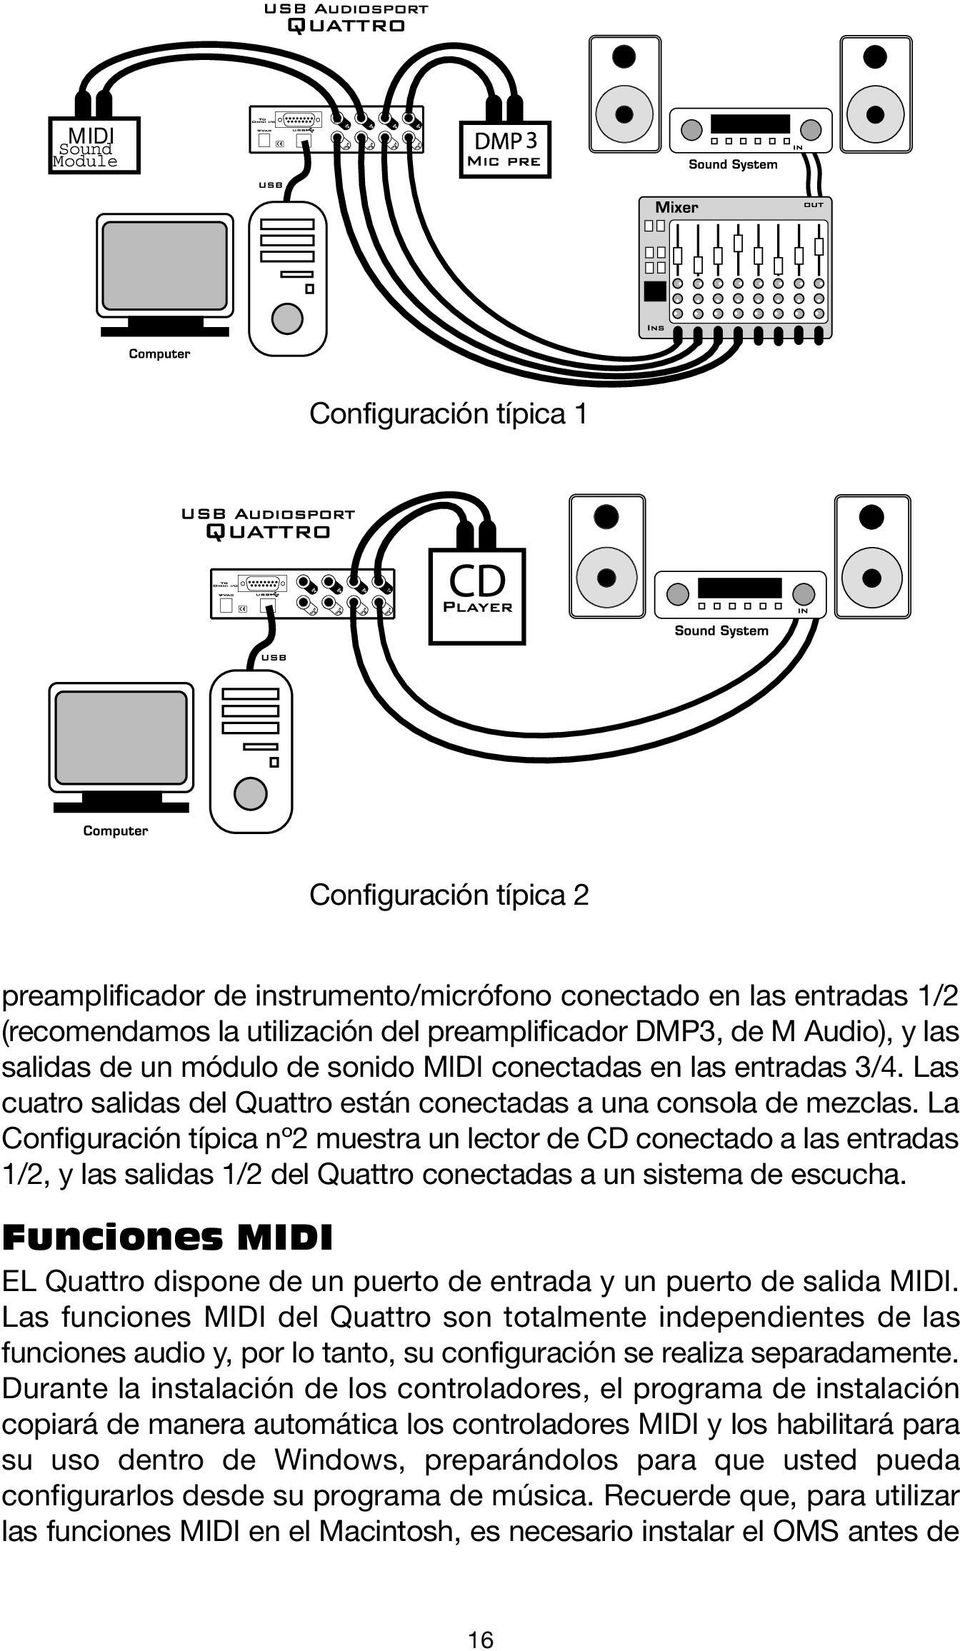 La Configuración típica nº2 muestra un lector de CD conectado a las entradas 1/2, y las salidas 1/2 del Quattro conectadas a un sistema de escucha.